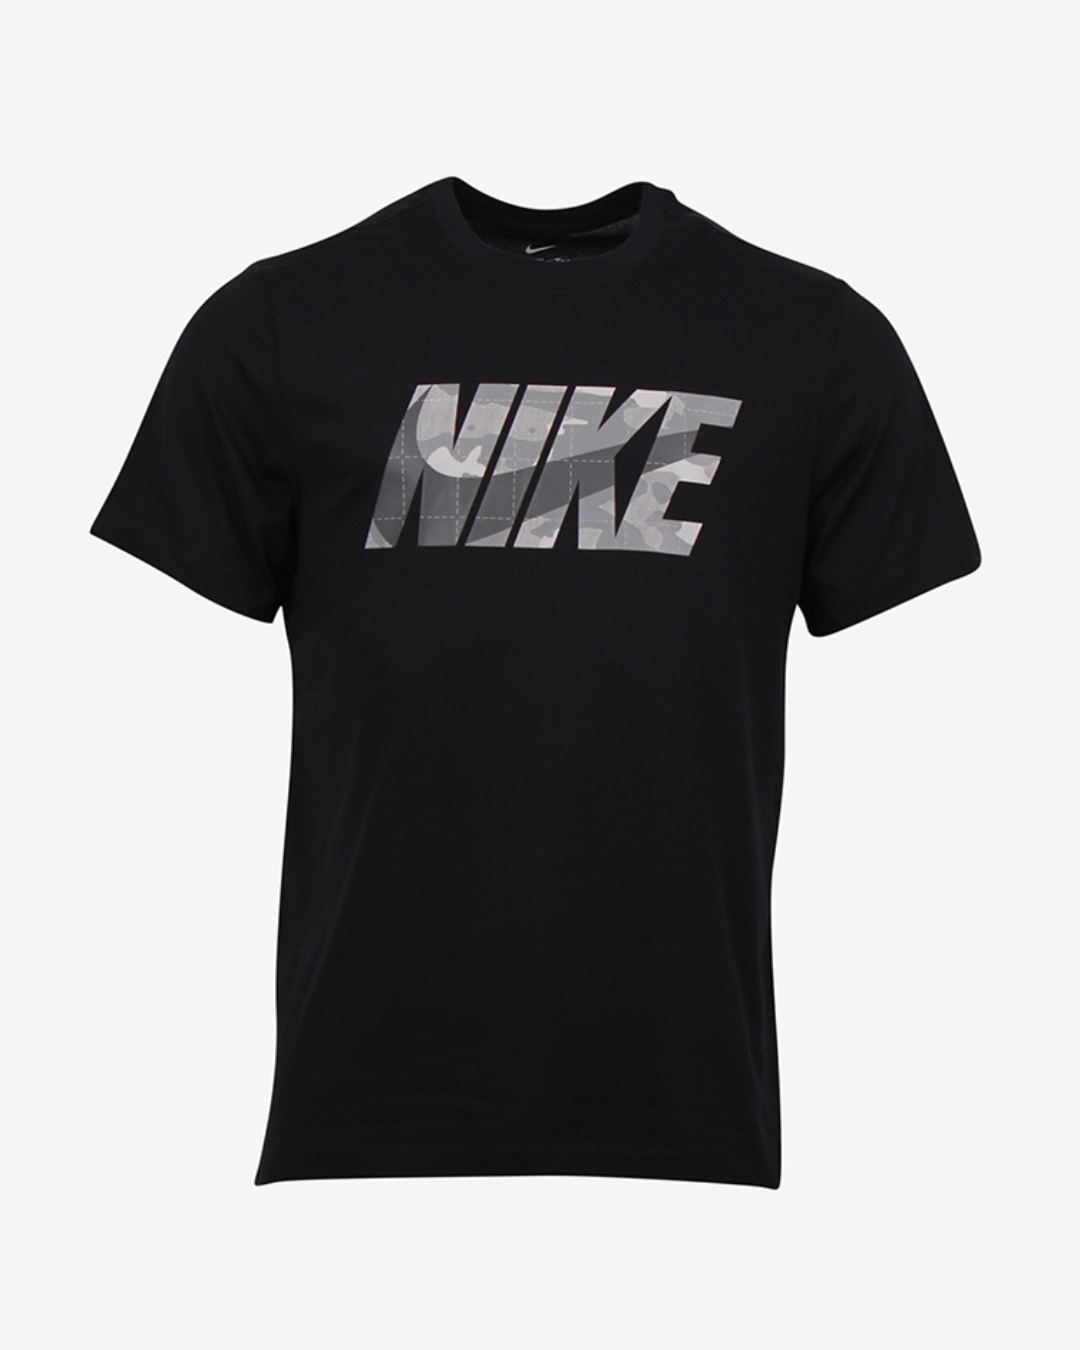 Nike Dri FIT camo t-shirt - Sort - Str. L - Modish.dk